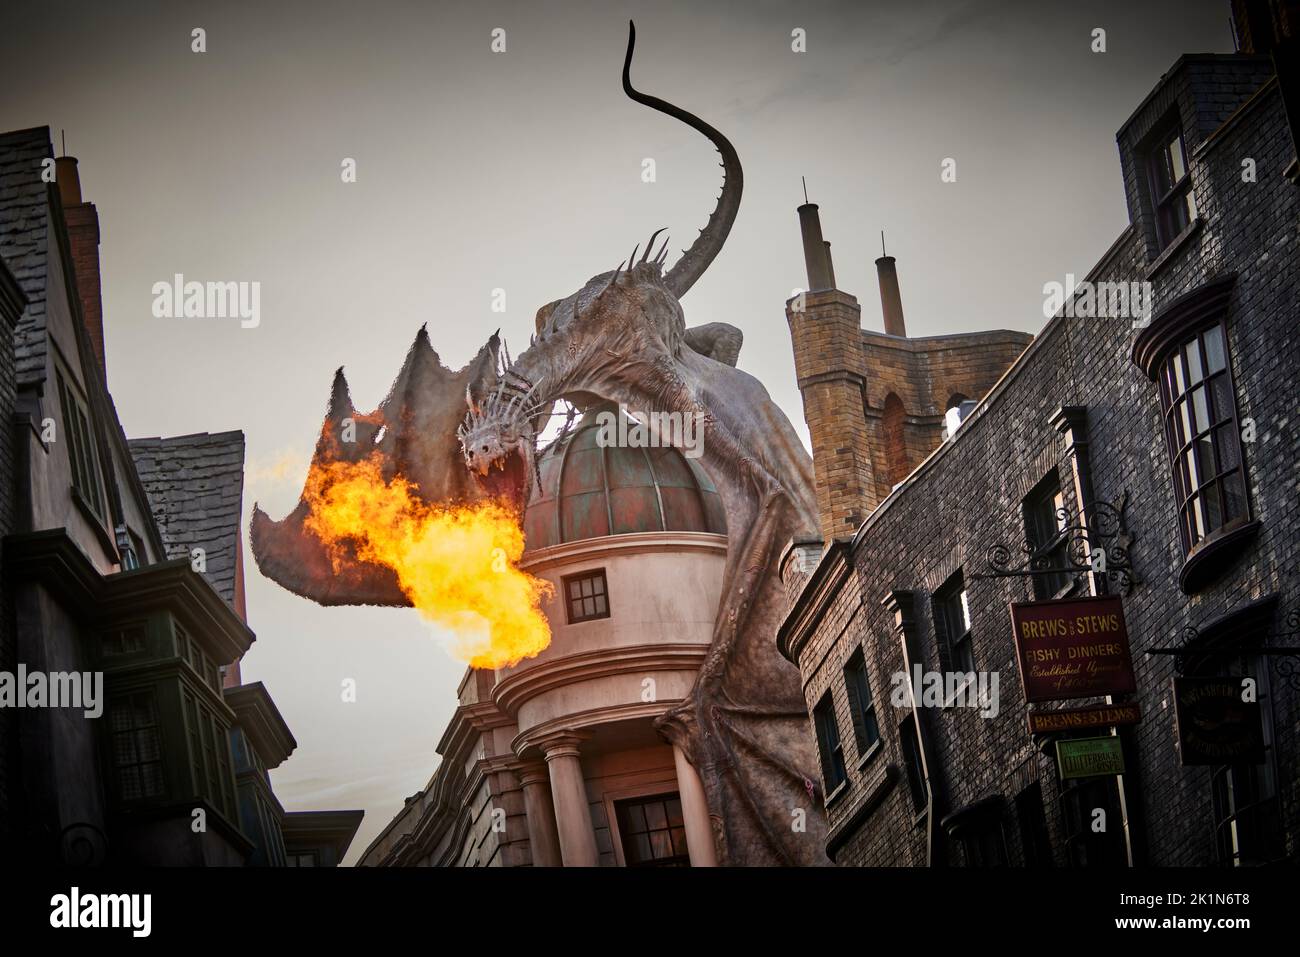 Themenpark Universal Studios Florida der Gringotts-Drache in der Zauberwelt von Harry Potter: Die Winkelgasse atmet Feuer Stockfoto